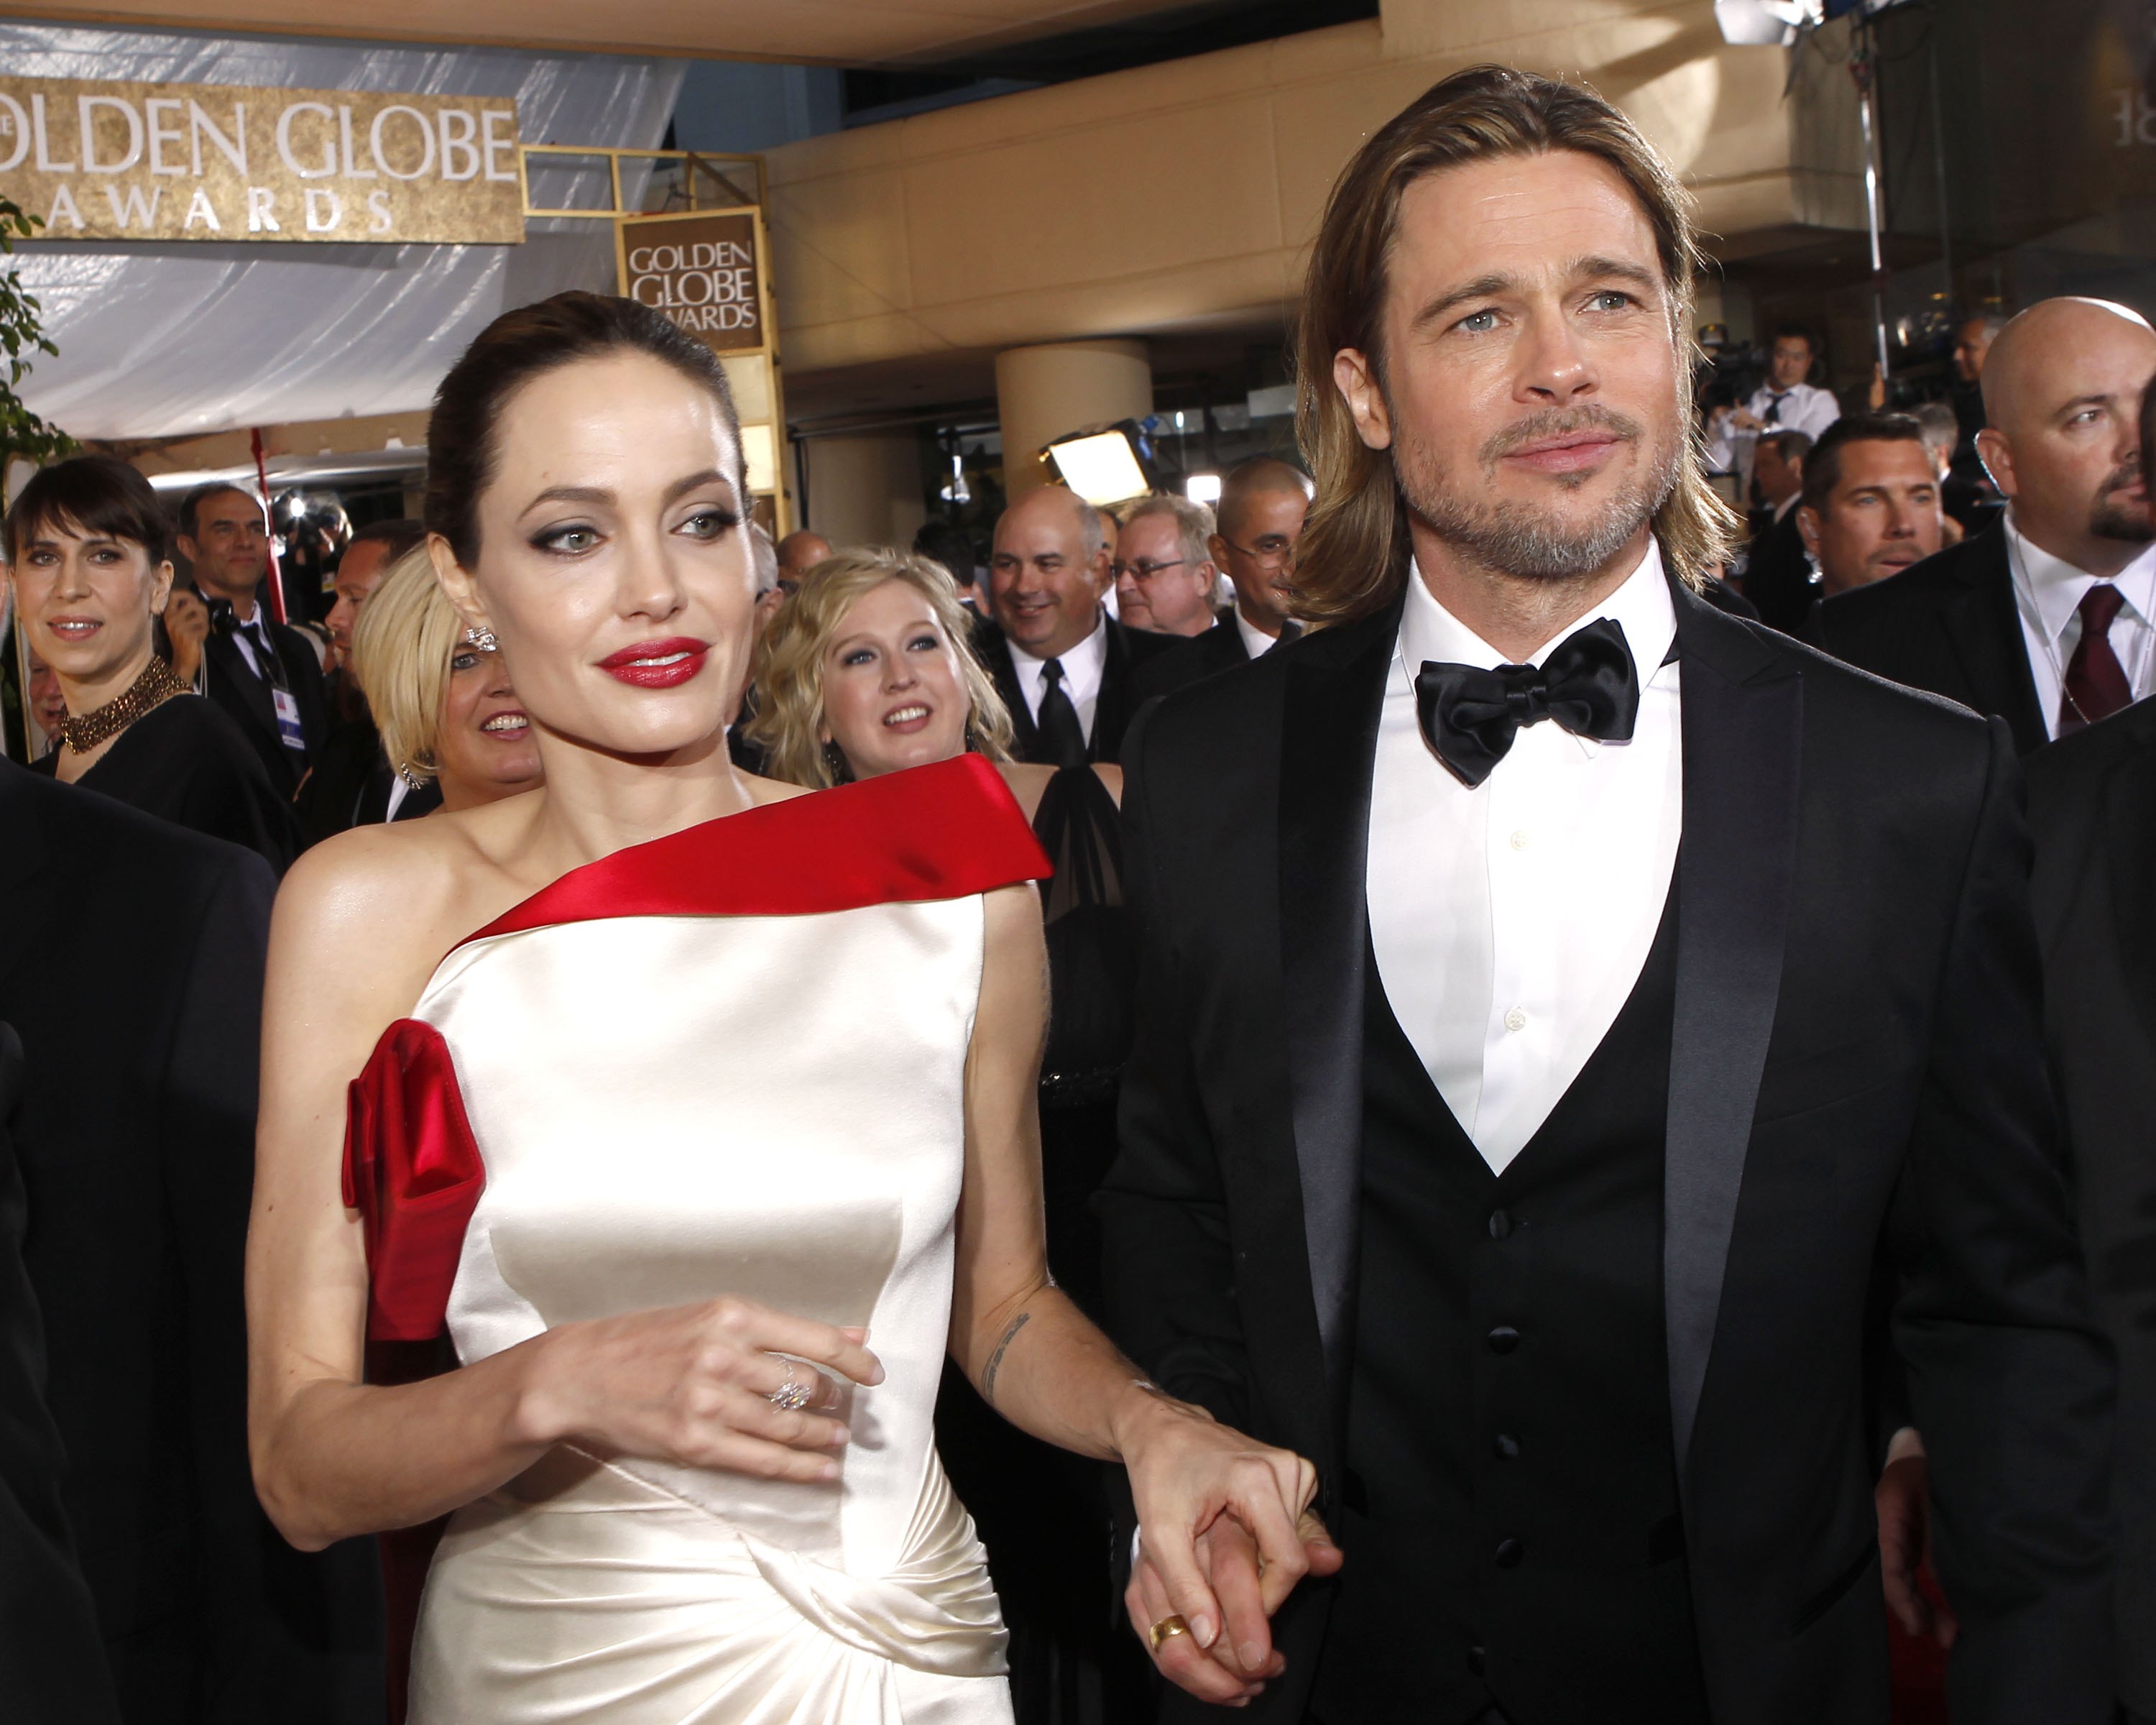 Angelina Jolie et Brad Pitt arrivent à la 69e cérémonie annuelle des Golden Globe Awards qui s'est tenue à l'hôtel Beverly Hilton le 15 janvier 2012. | Source : Getty Images